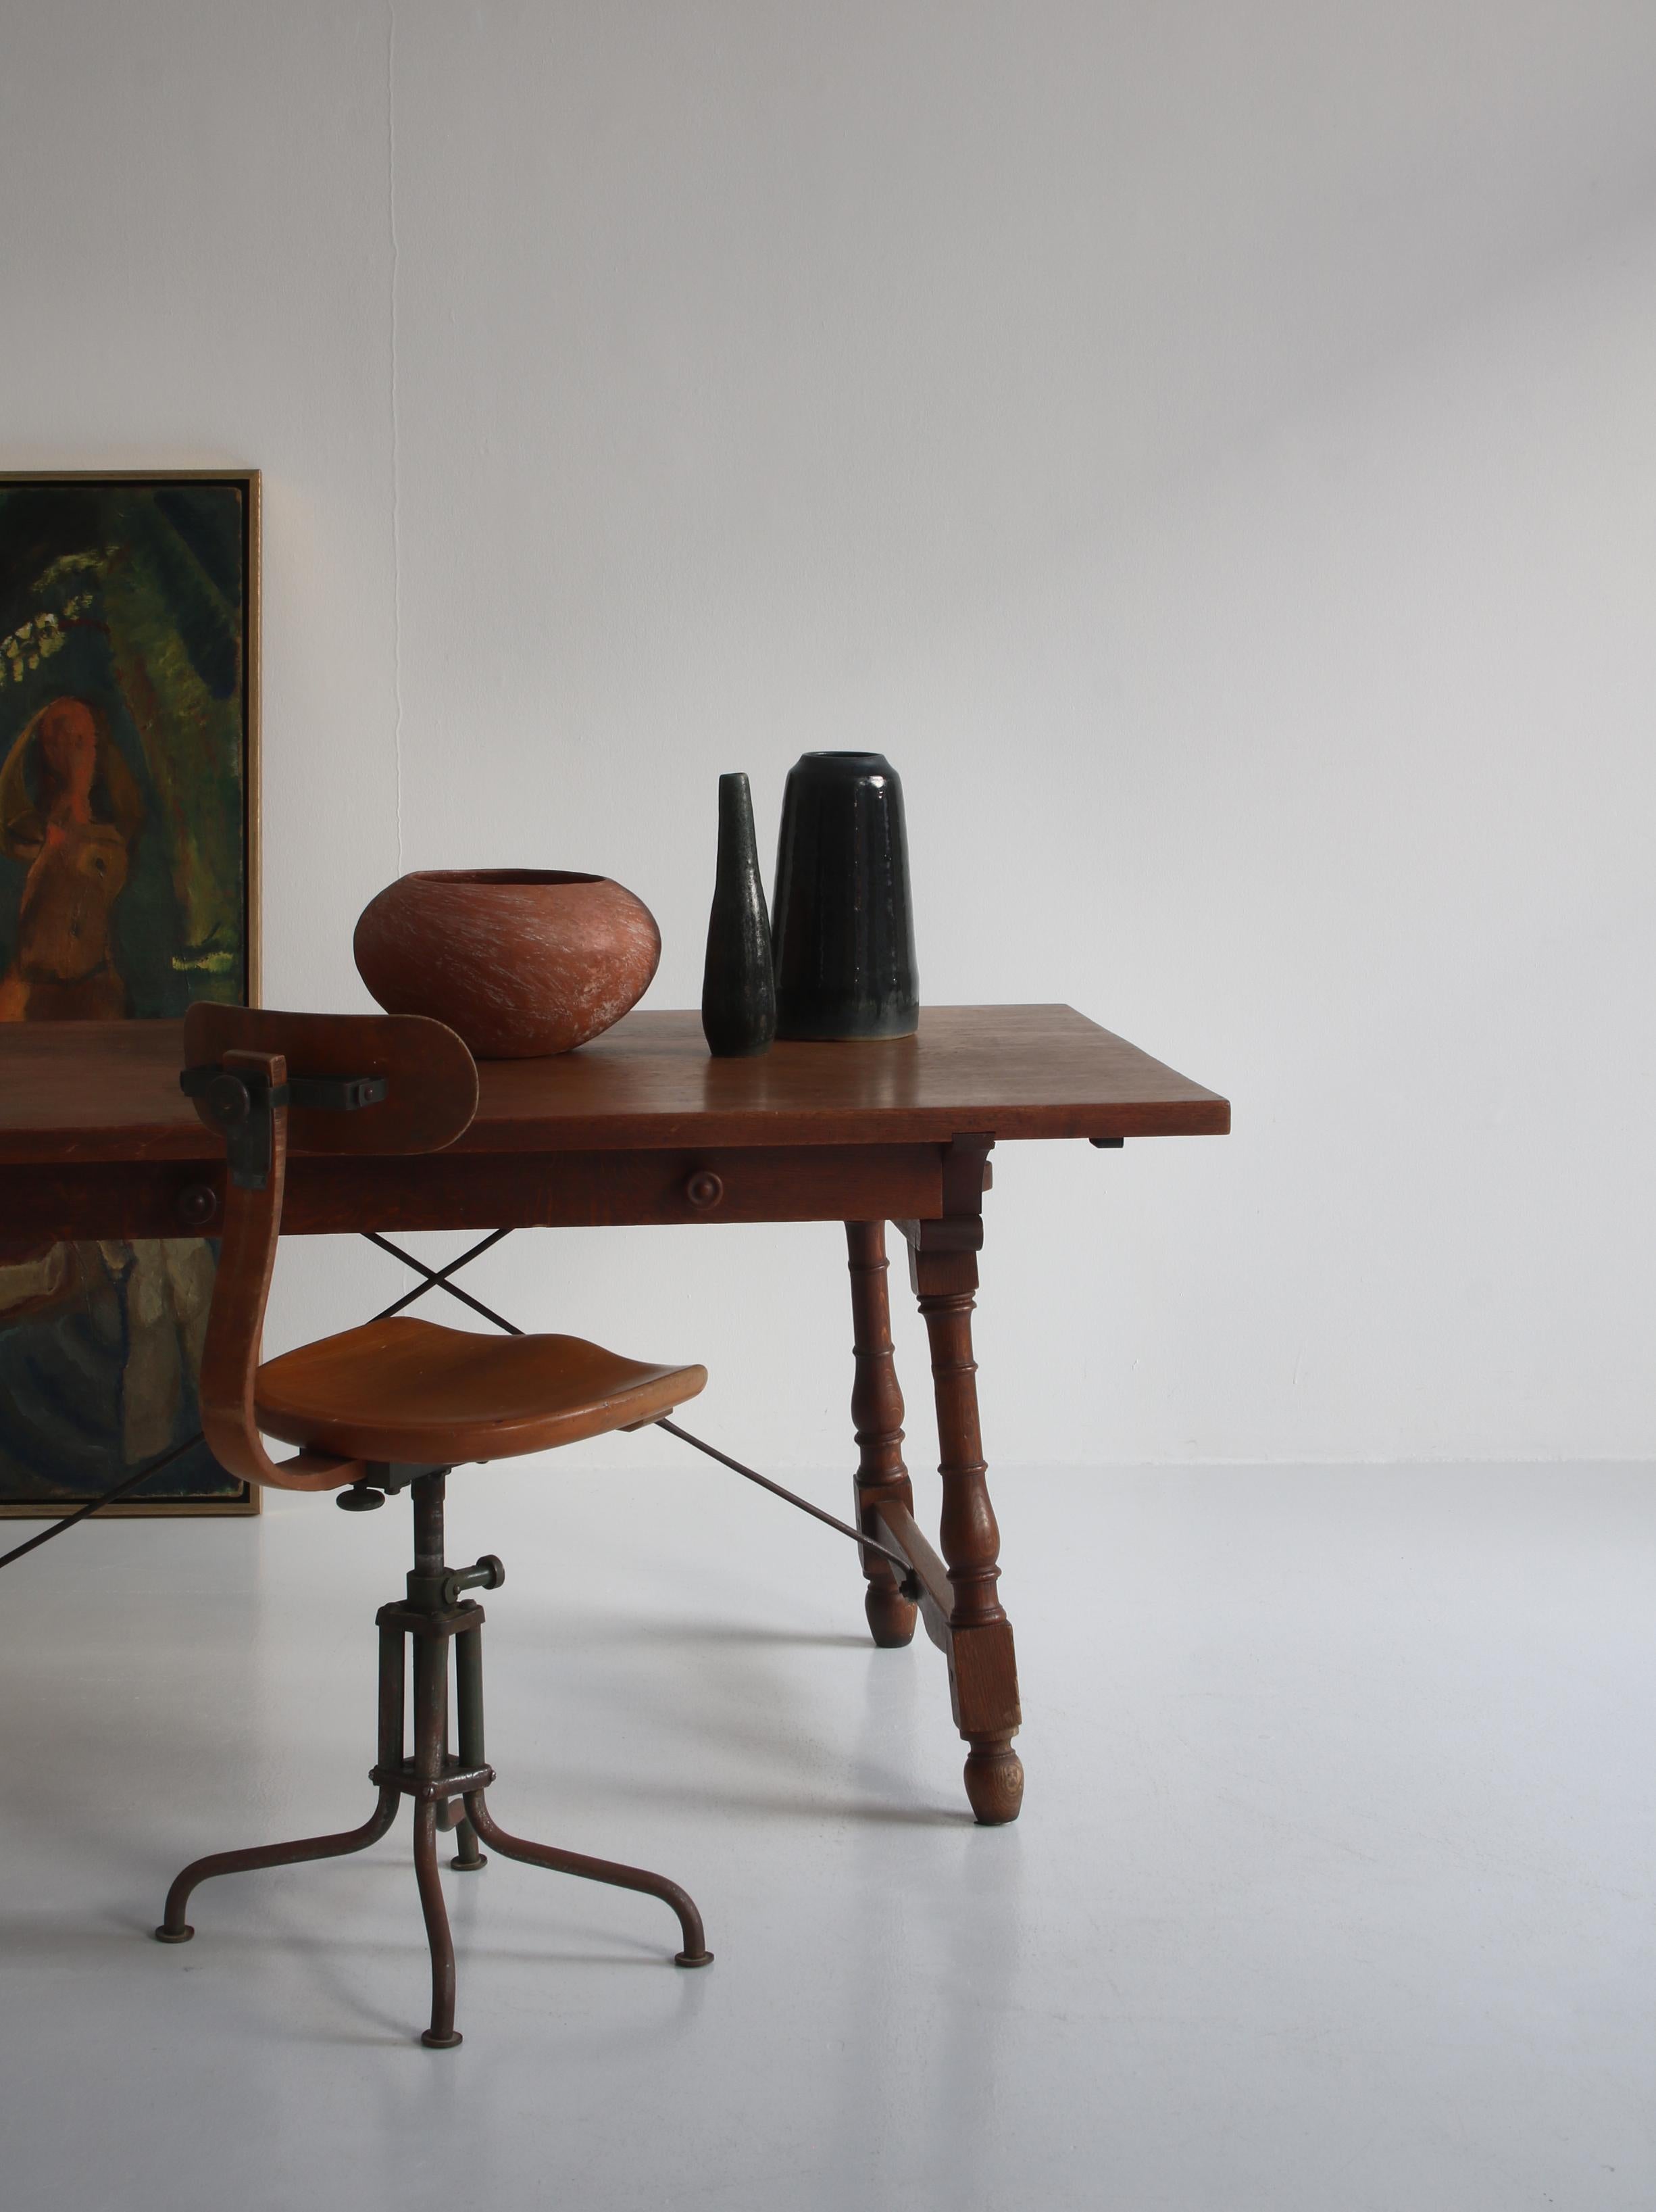 Ein atemberaubender skandinavischer Tisch oder Schreibtisch aus massivem Teakholz und Eiche mit durchgehender Schublade und leicht schrägen Beinen und zwei gekreuzten Eisenstangen. Der Schreibtisch wurde 1953 von dem berühmten dänischen Designer